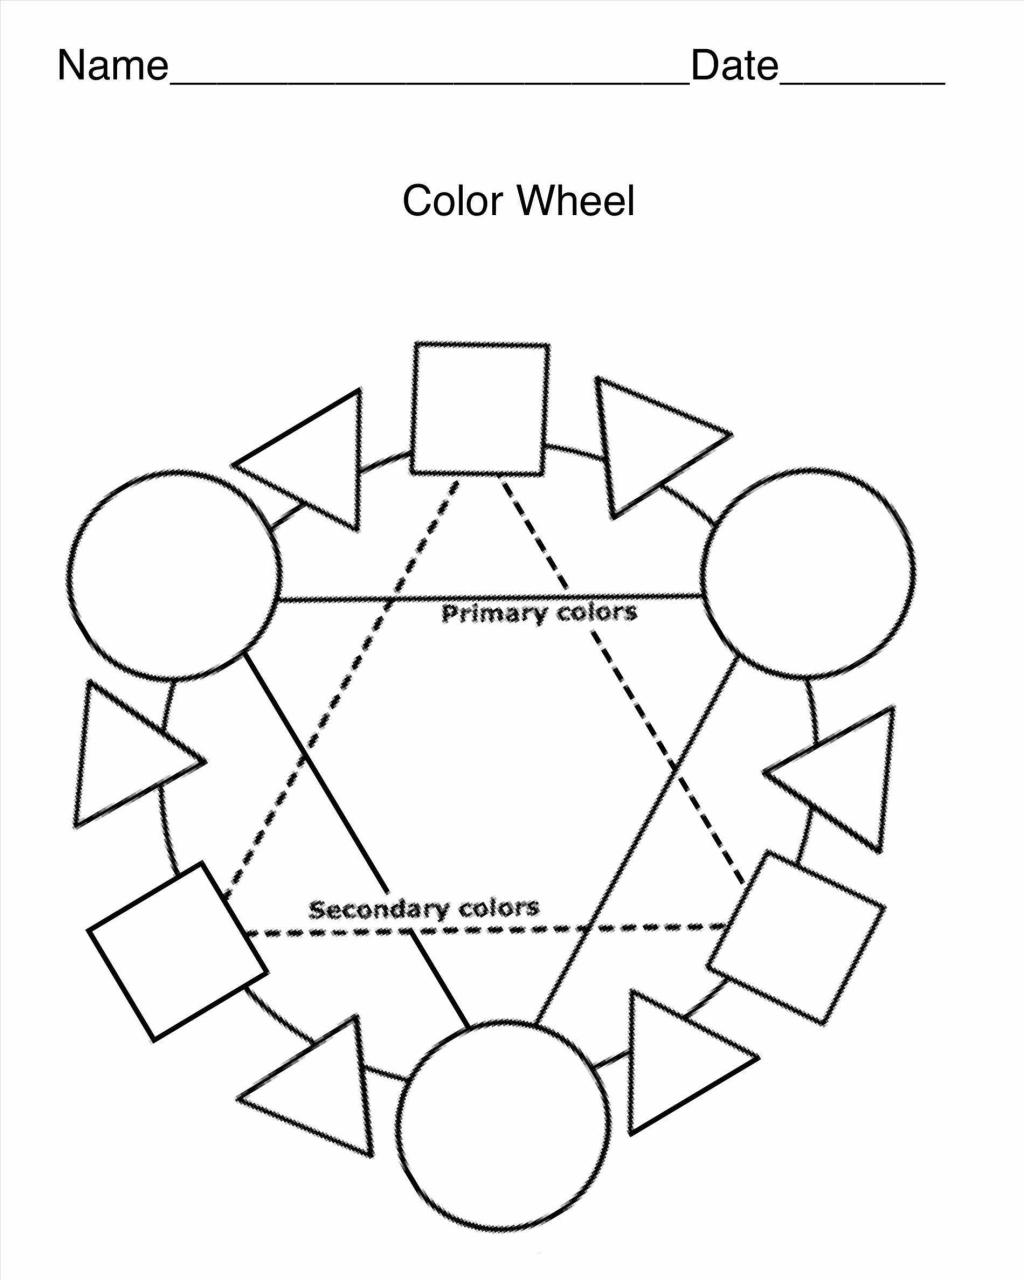 Color Wheel Worksheet Free